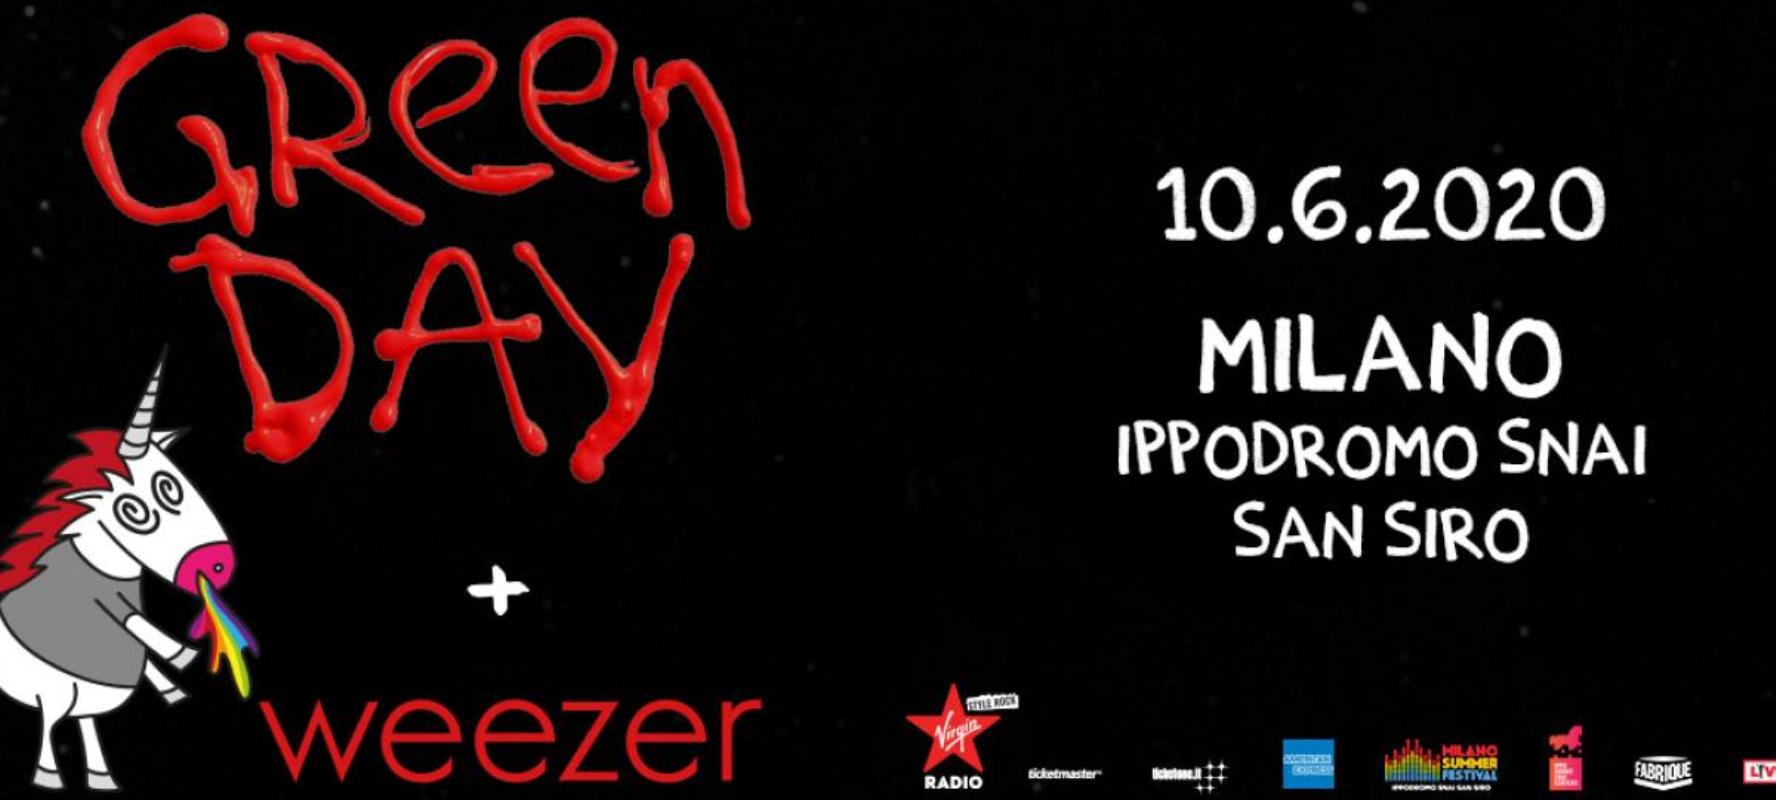 Green Day e Weezer in Italia, 10 giugno 2020, Milano